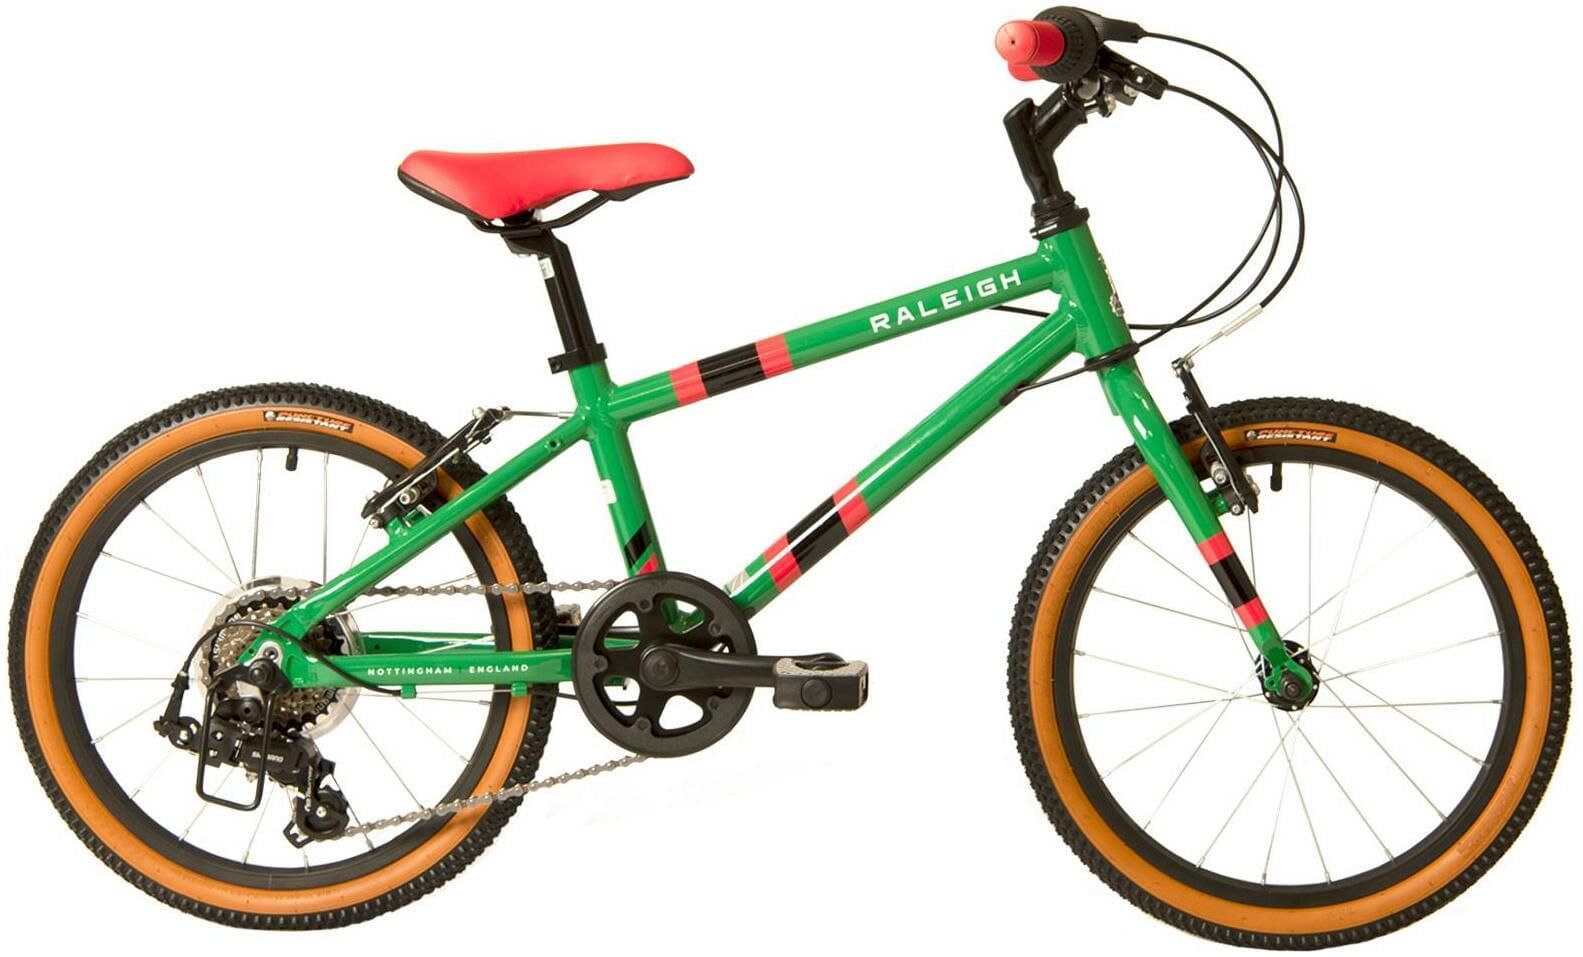 18 inch bike